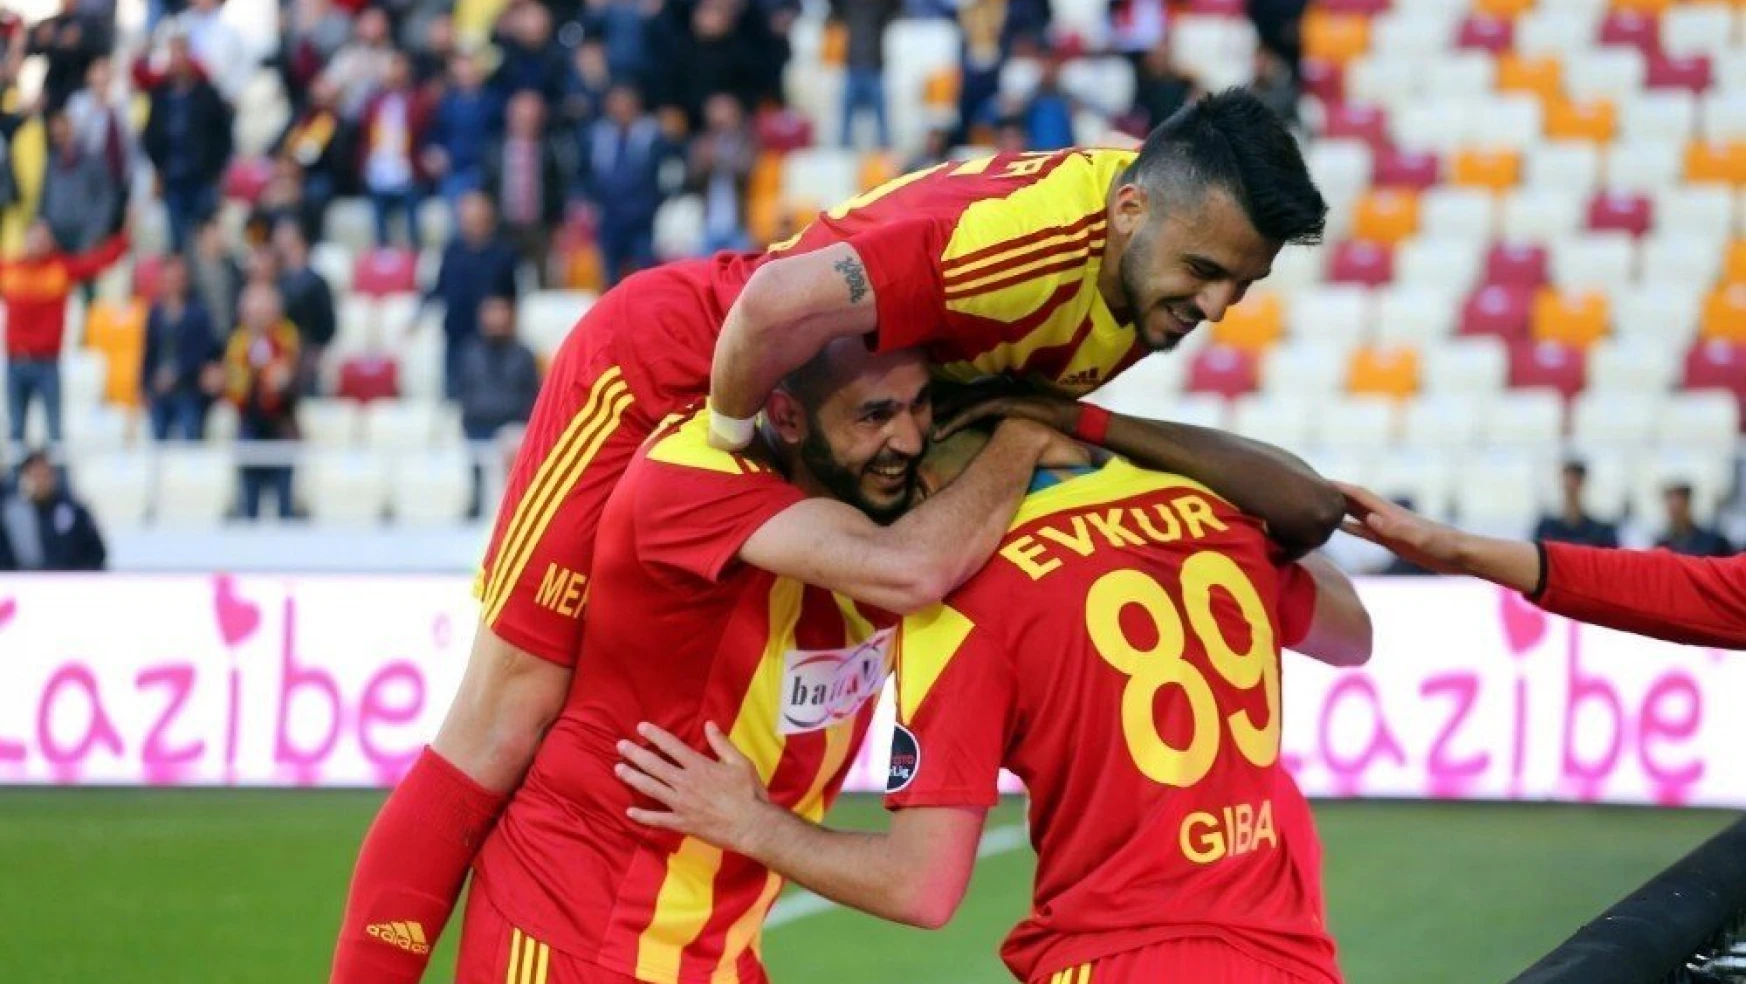 Spor Toto Süper Lig: Evkur Yeni Malatyaspor: 4 - Gençlerbirliği: 1 (Maç sonucu)
